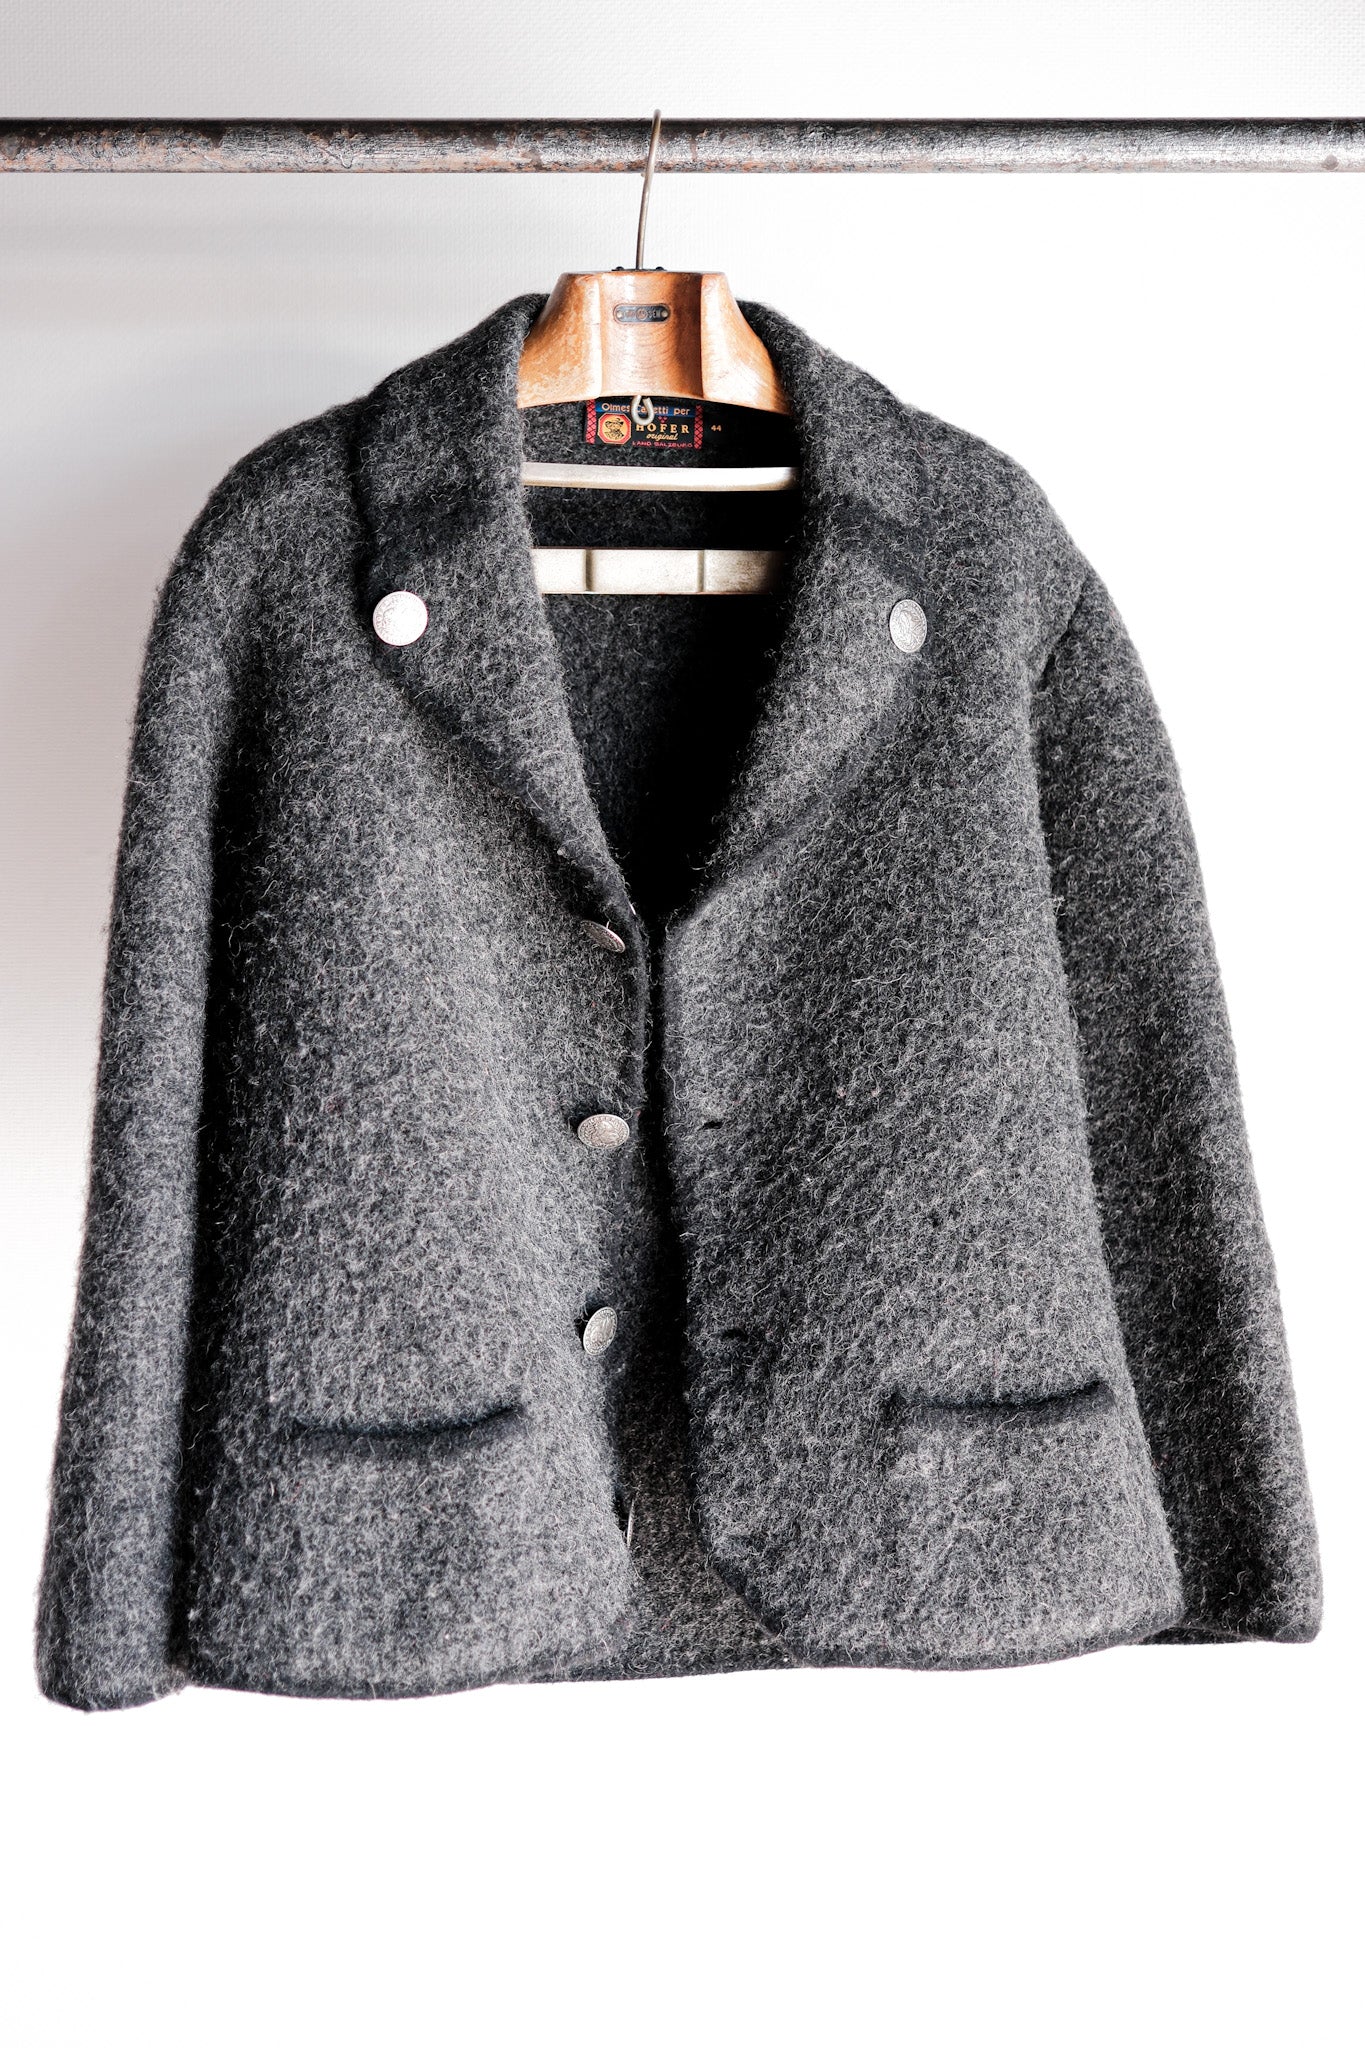 [~ 80's] Hofer Tyrolean Wool Jacket Size.4444